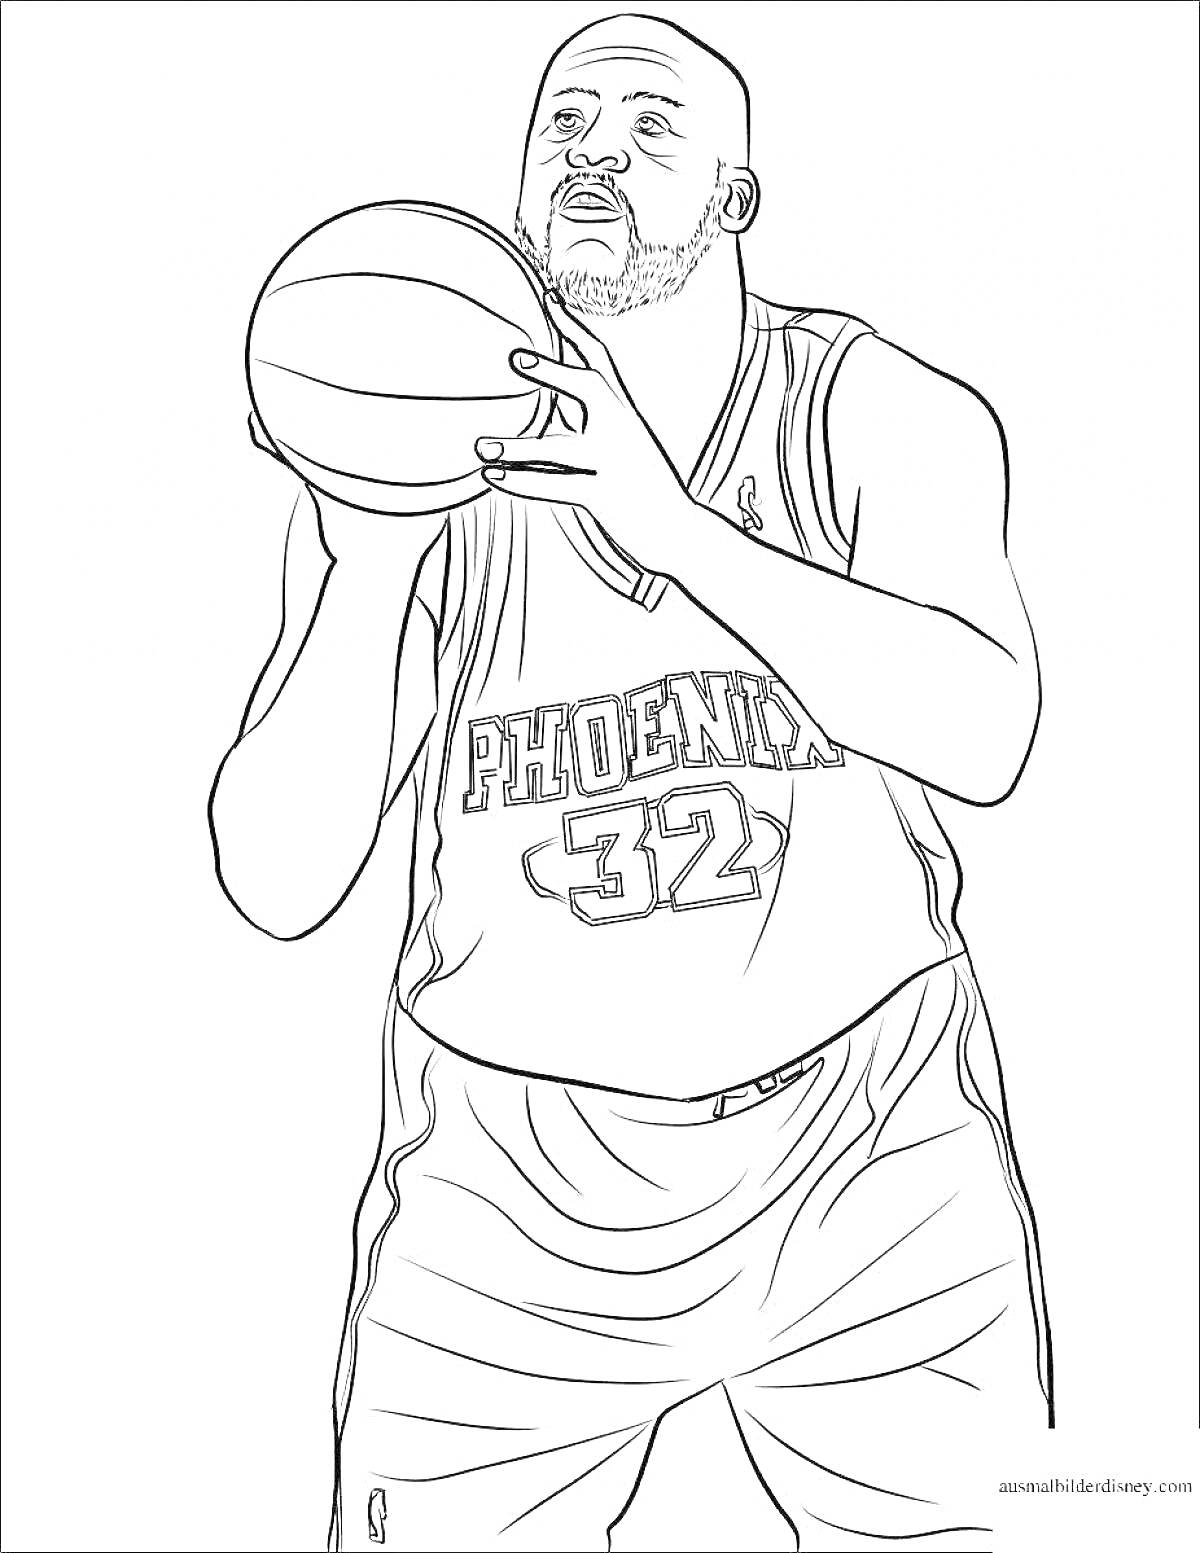 Раскраска Баскетболист в форме команды Phoenix с номером 32, с мячом, готовящийся сделать бросок